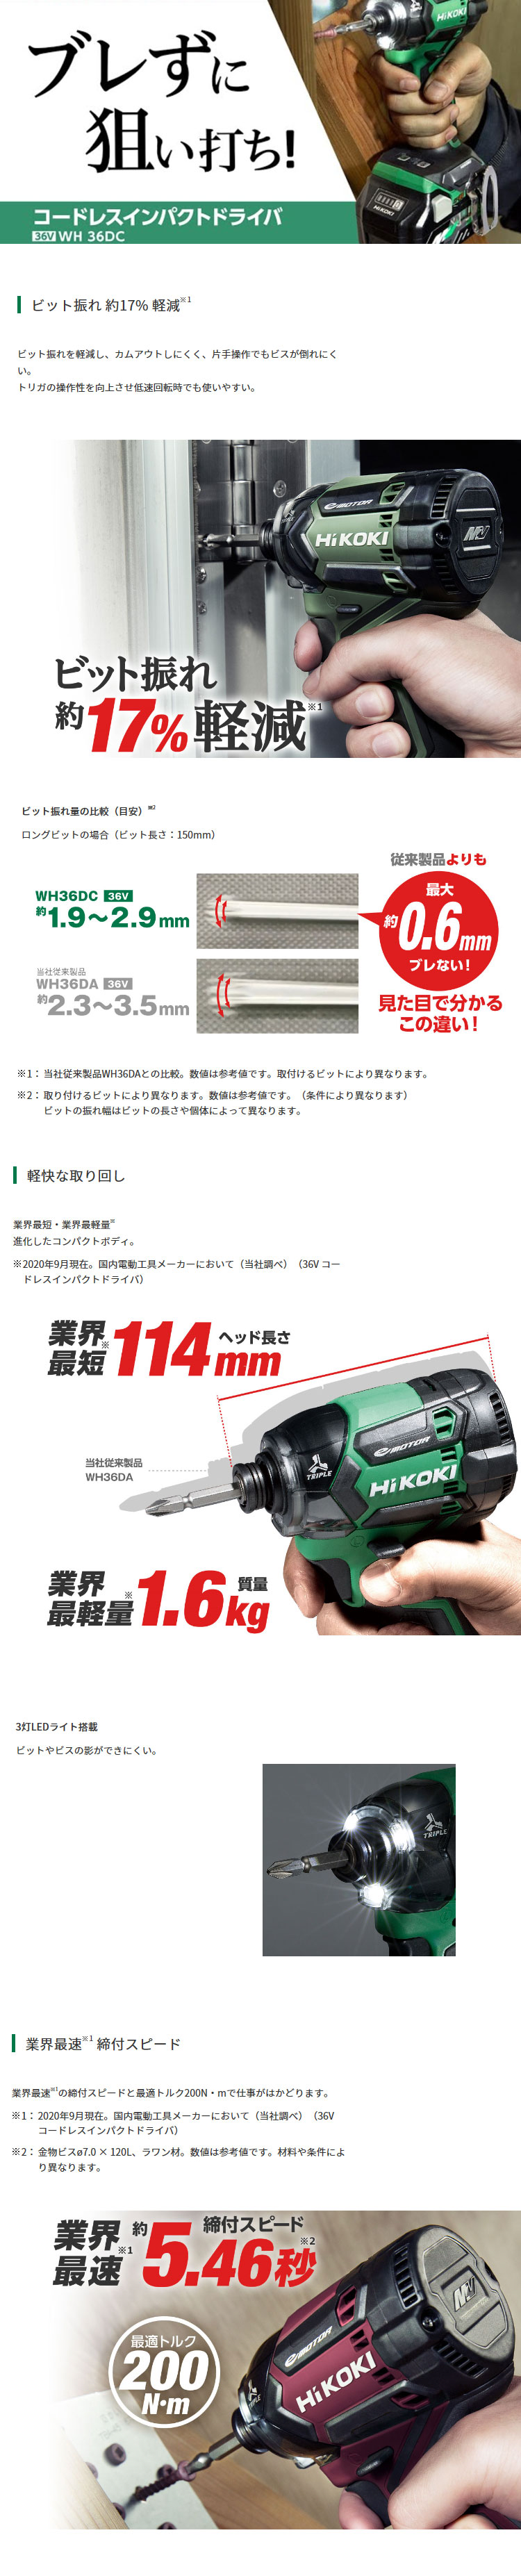 HiKOKI (ハイコーキ) マルチボルト(36V) コードレスインパクトドライバ ストロングブラック ケース・充電器・Bluetoothバッテリ2個・力こぶビットセット WH36DC(2XPBS) 新品